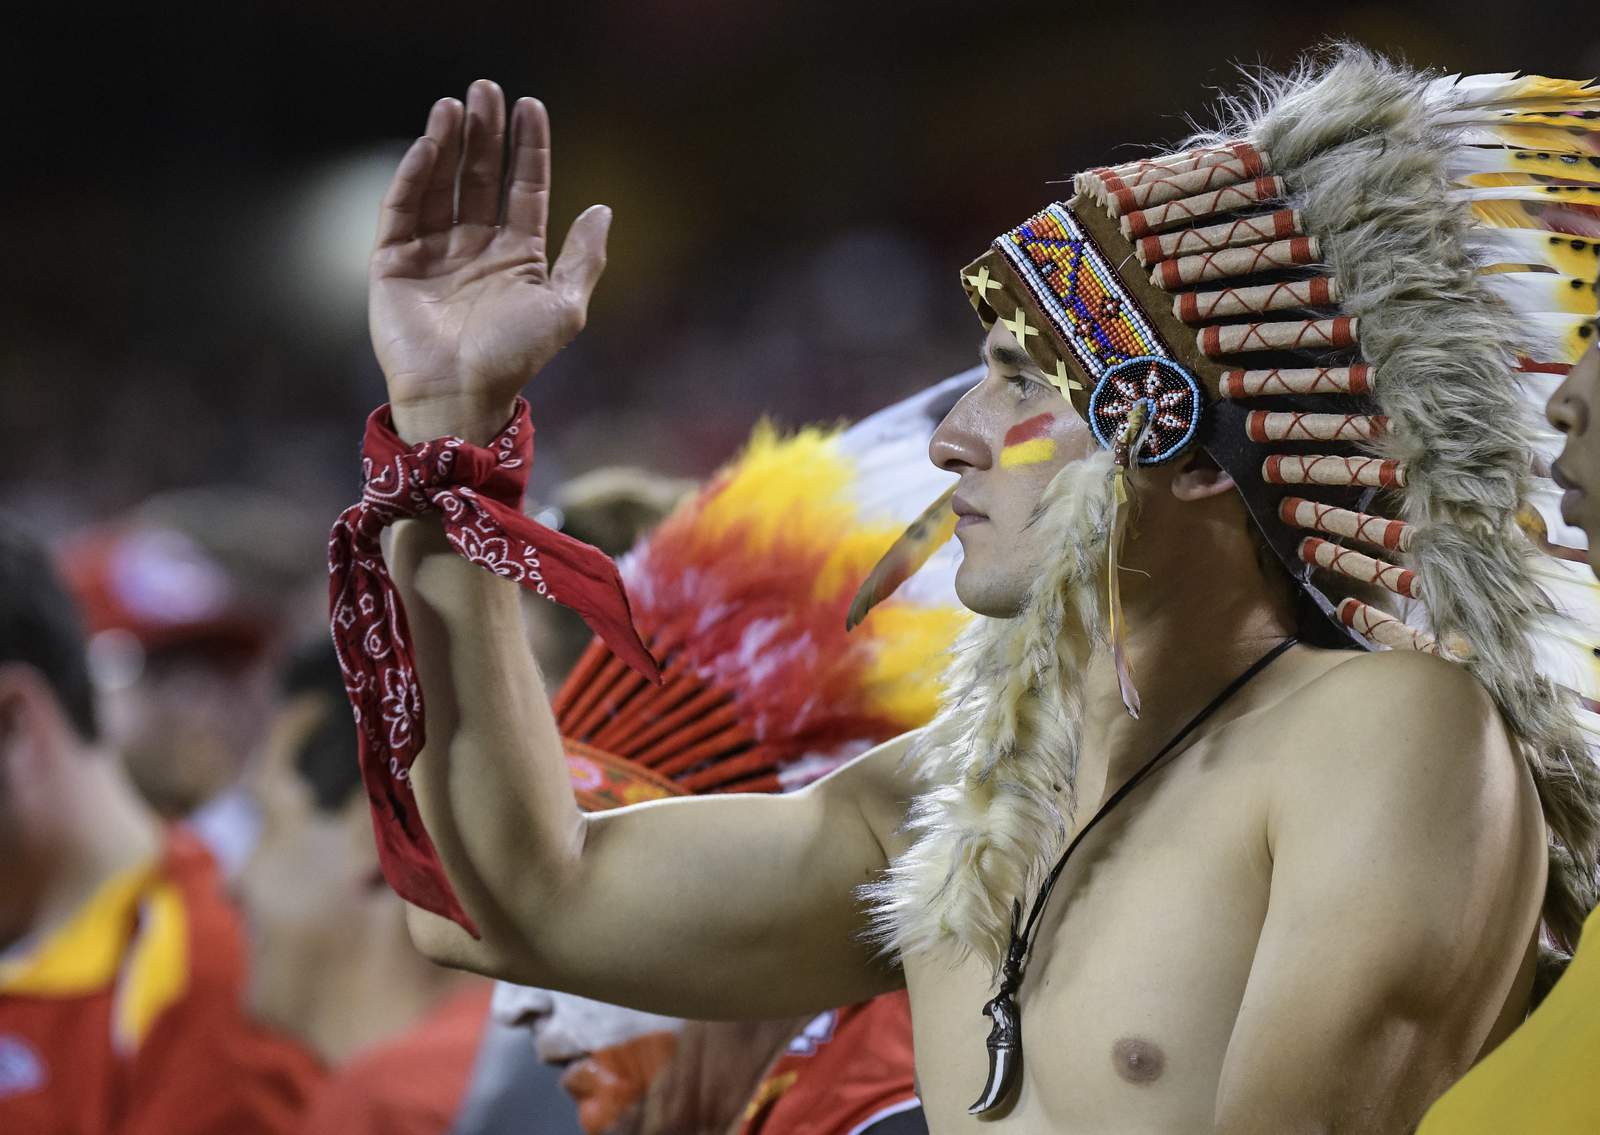 Kansas City fans under closer scrutiny for chants, ‘tomahawk chops’